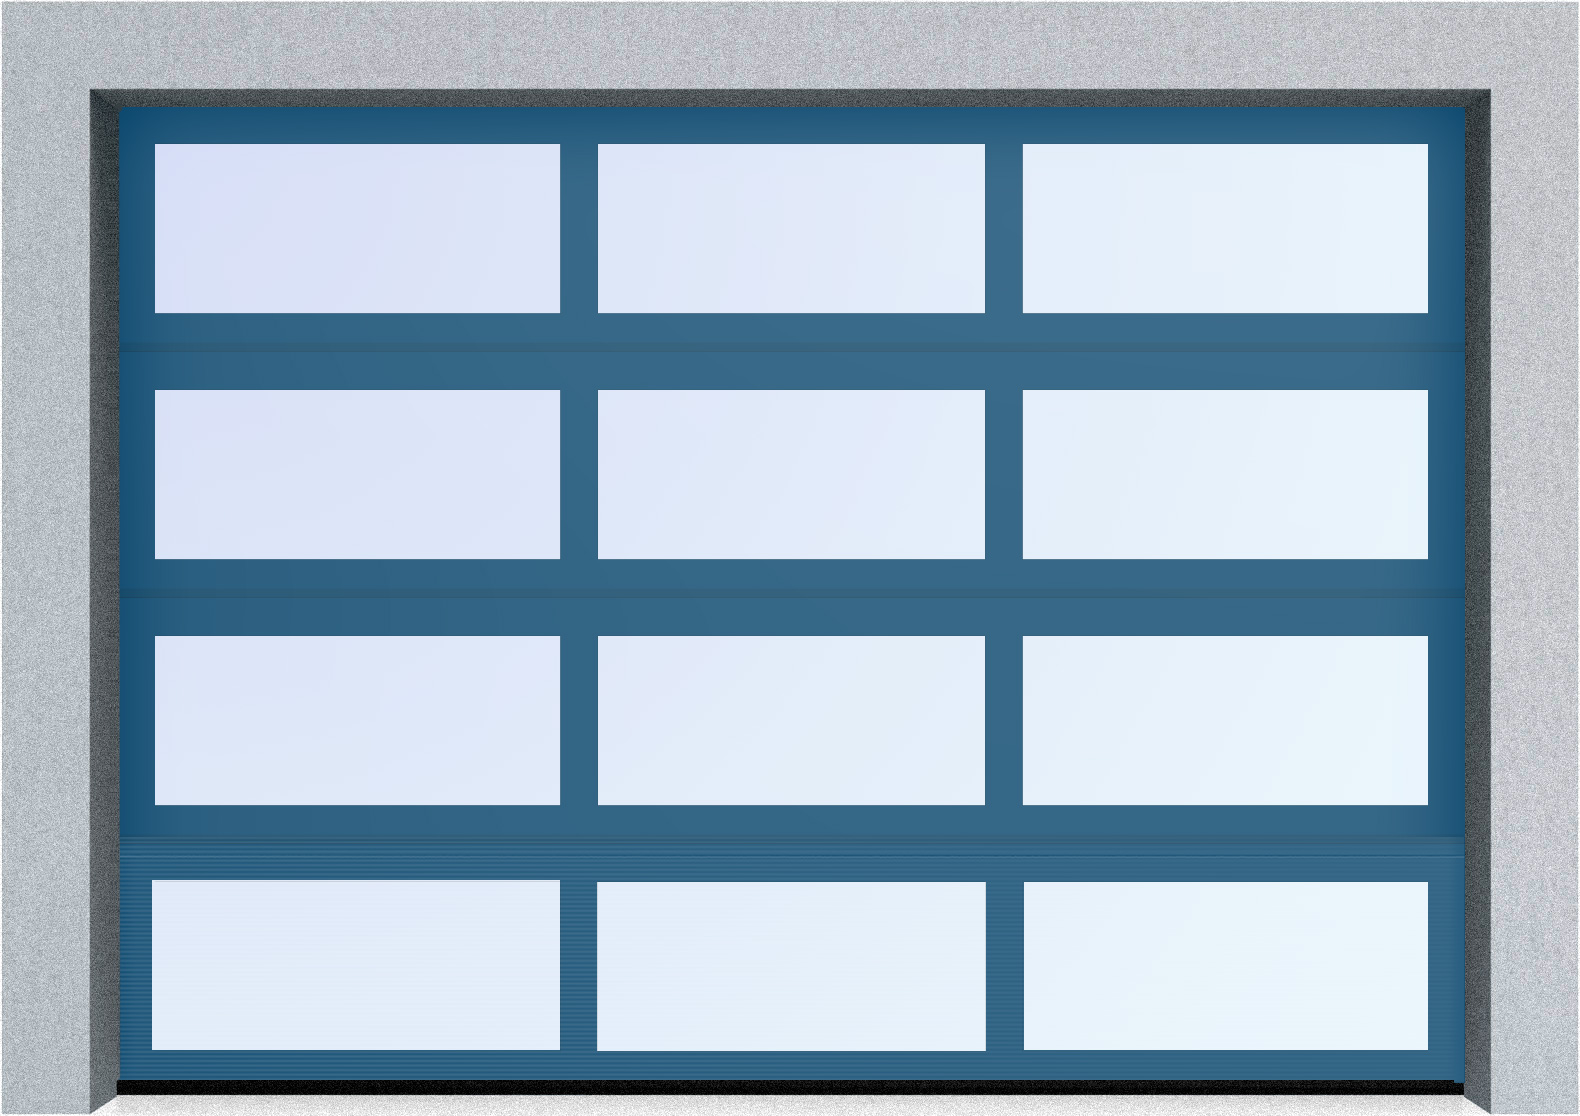  Секционные панорамные ворота серии AluTrend (АЛП) 6500х5500 нижняя панель стандартные цвета, фото 3 